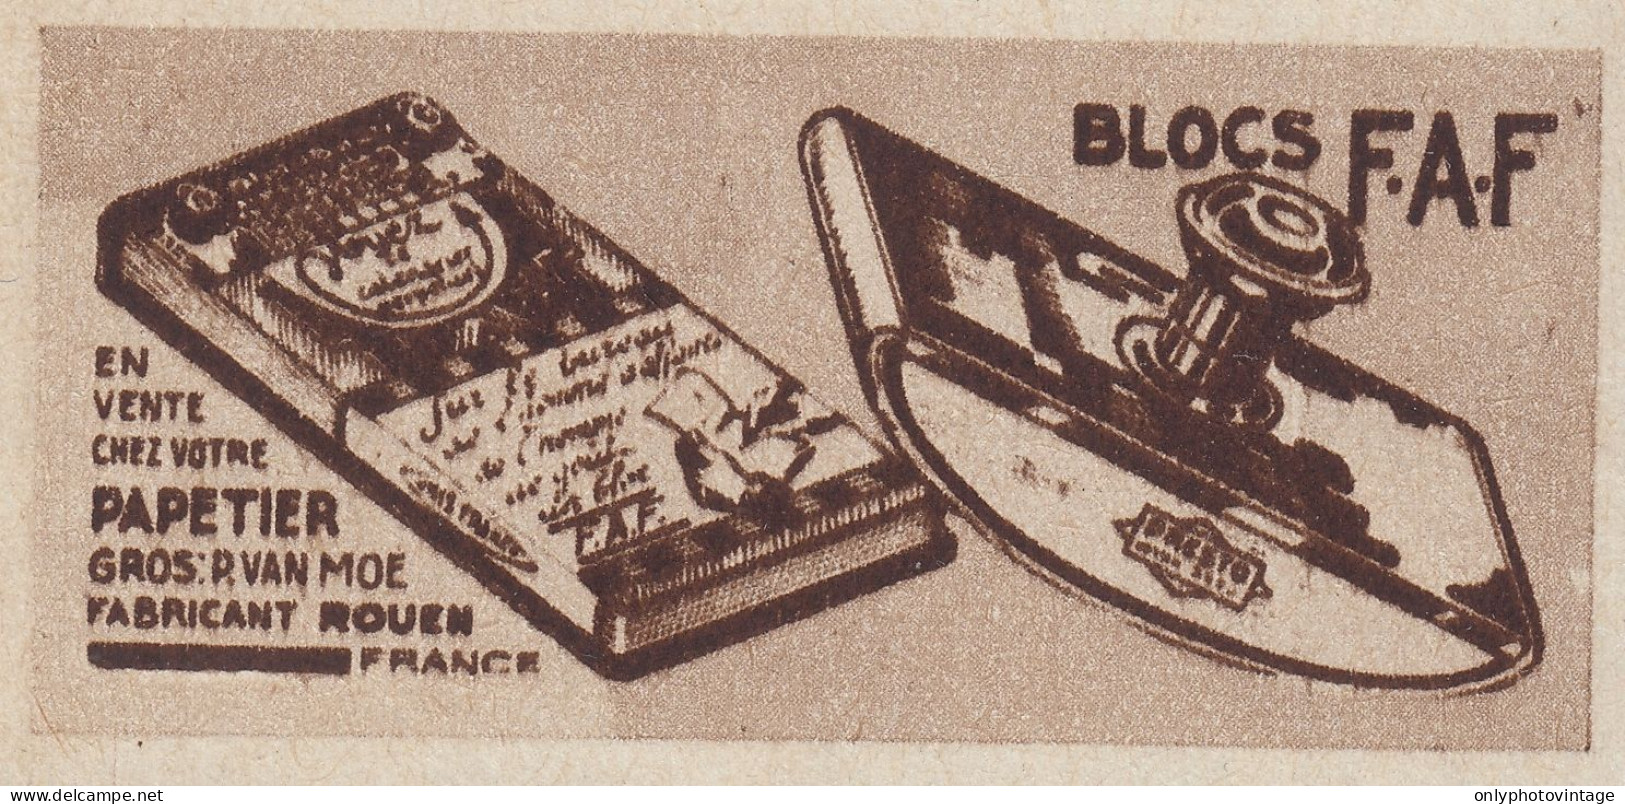 Papetier - Blocs F.A.F. - 1936 Vintage Advertising - Pubblicit� Epoca - Werbung